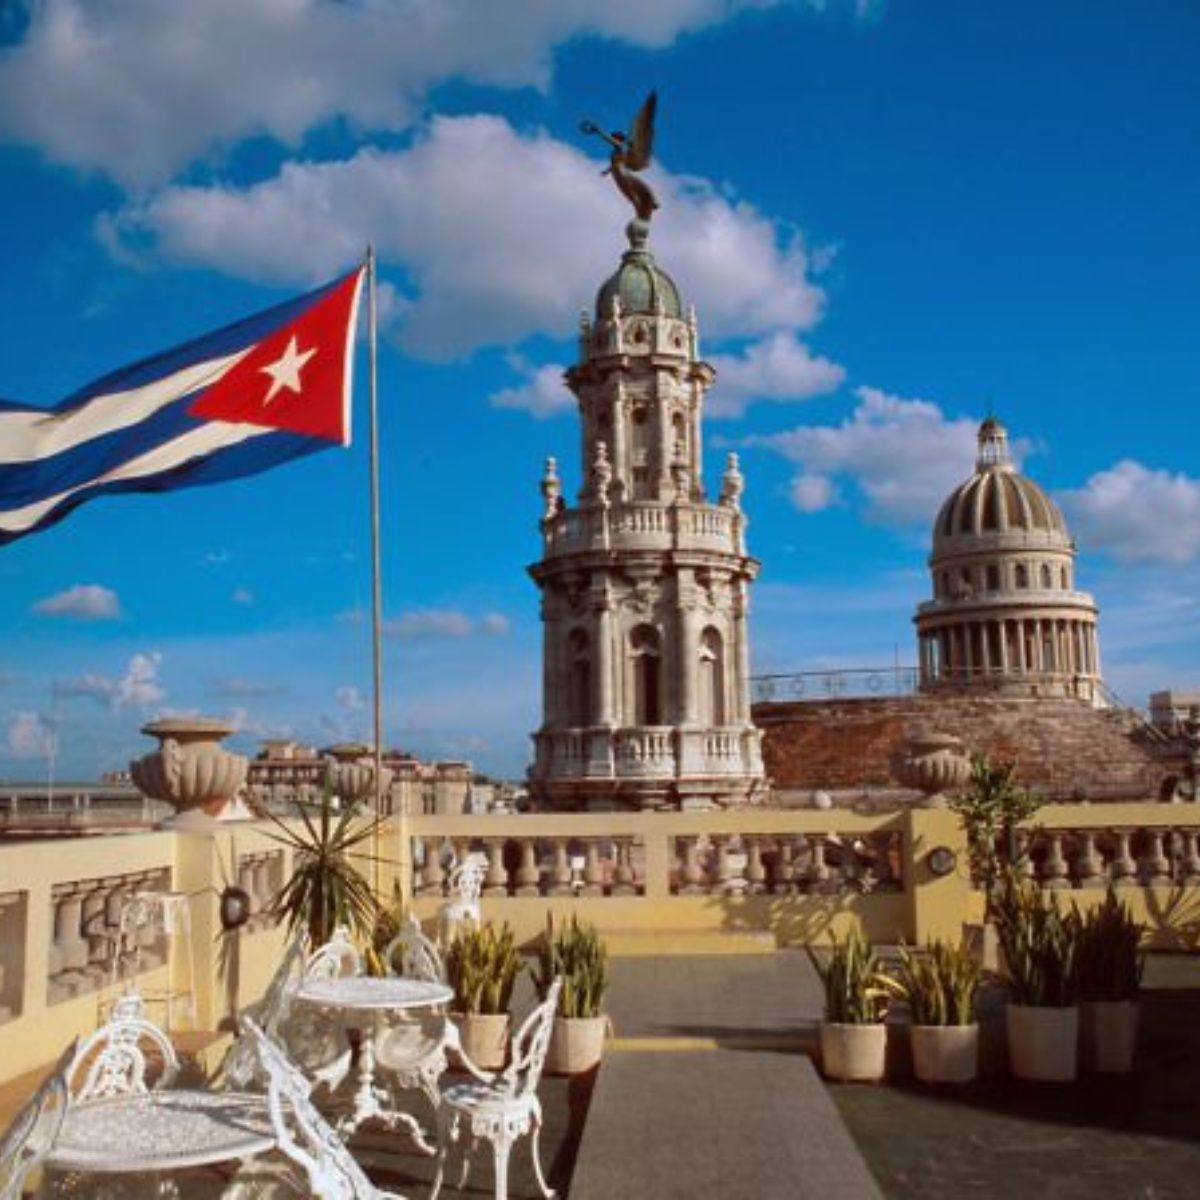 Desde este 5 de junio quedan prohibidos los cruceros y viajes grupales a Cuba